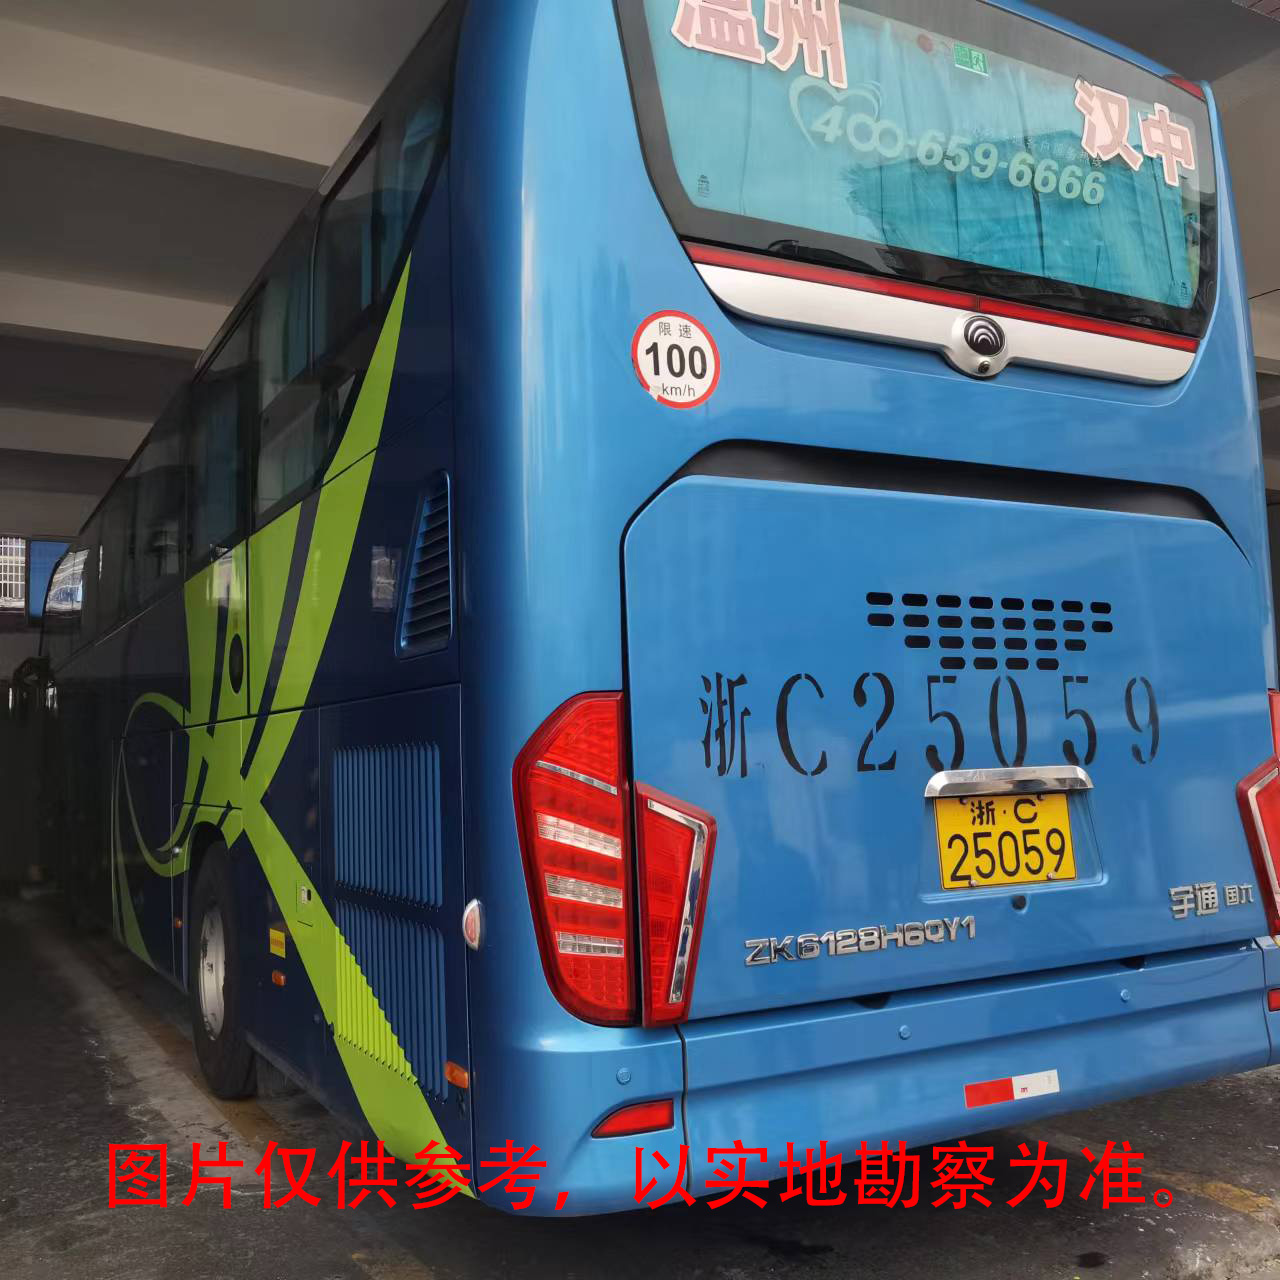 浙C25088宇通牌等两辆大型普通客车整体捆绑转让出售招标